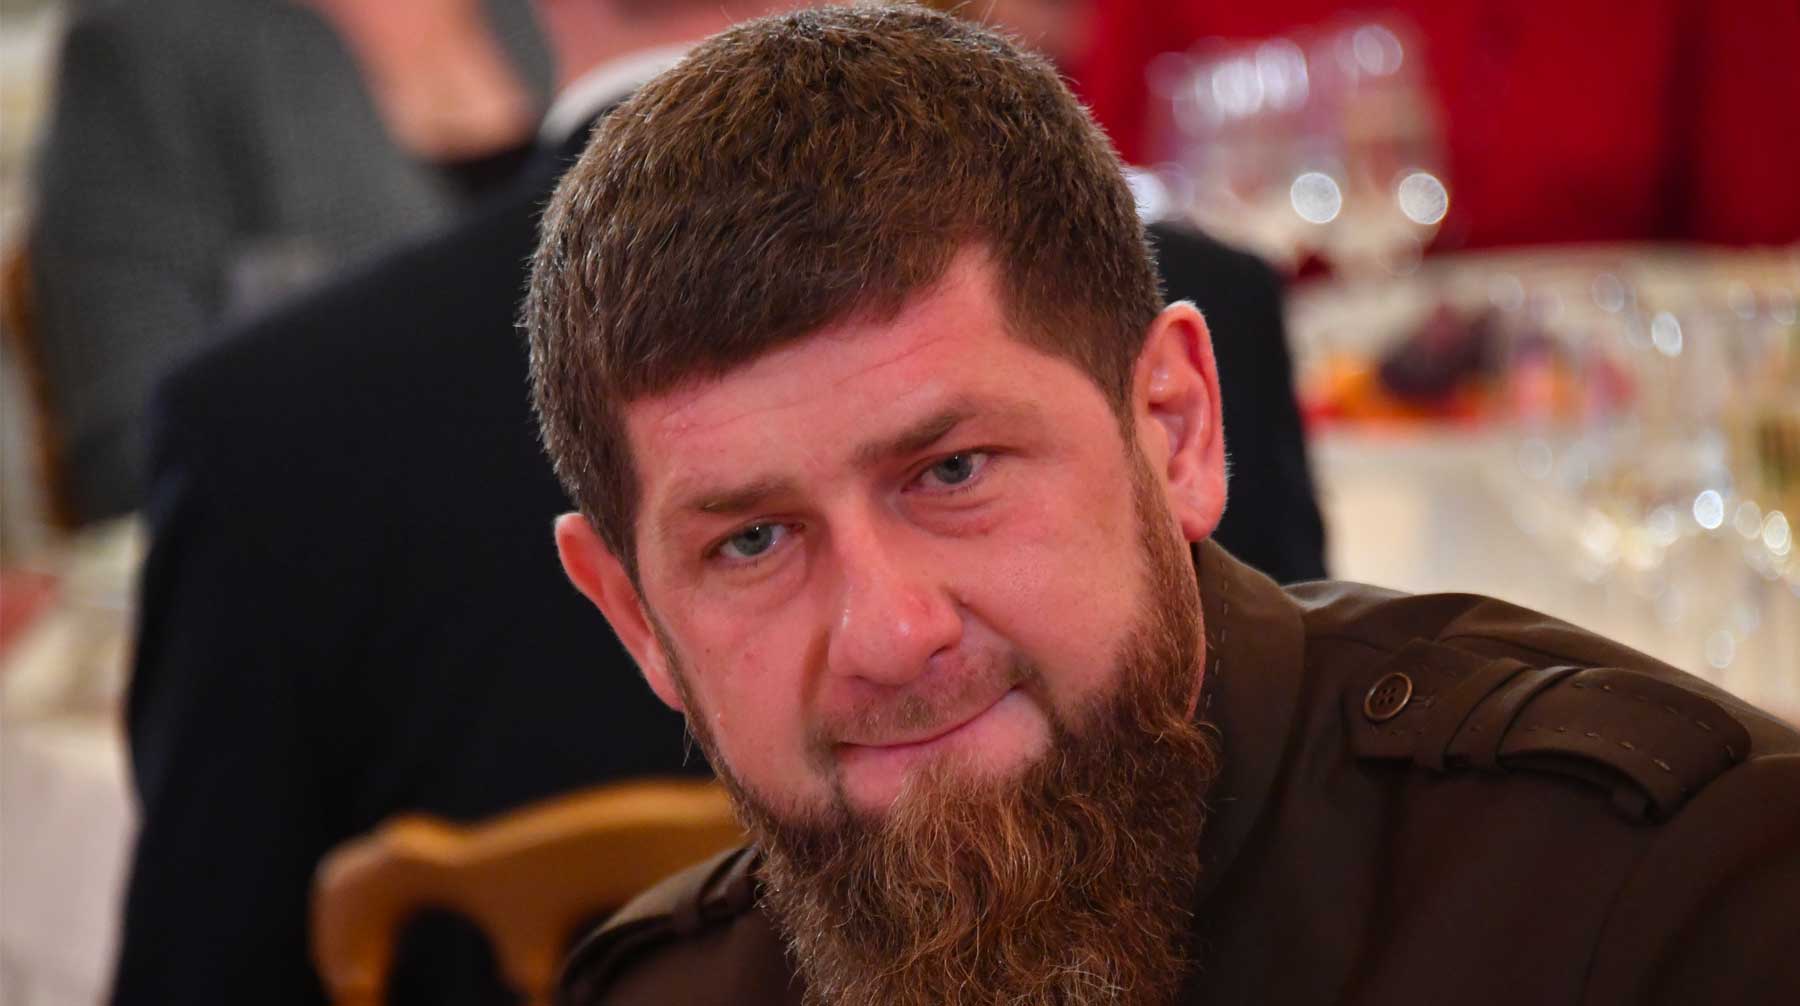 Глава Чечни выразил уверенность в том, что следствие и суд разберутся, если на них не будет оказываться давление Фото: © GLOBAL LOOK press / Komsomolskaya Pravda